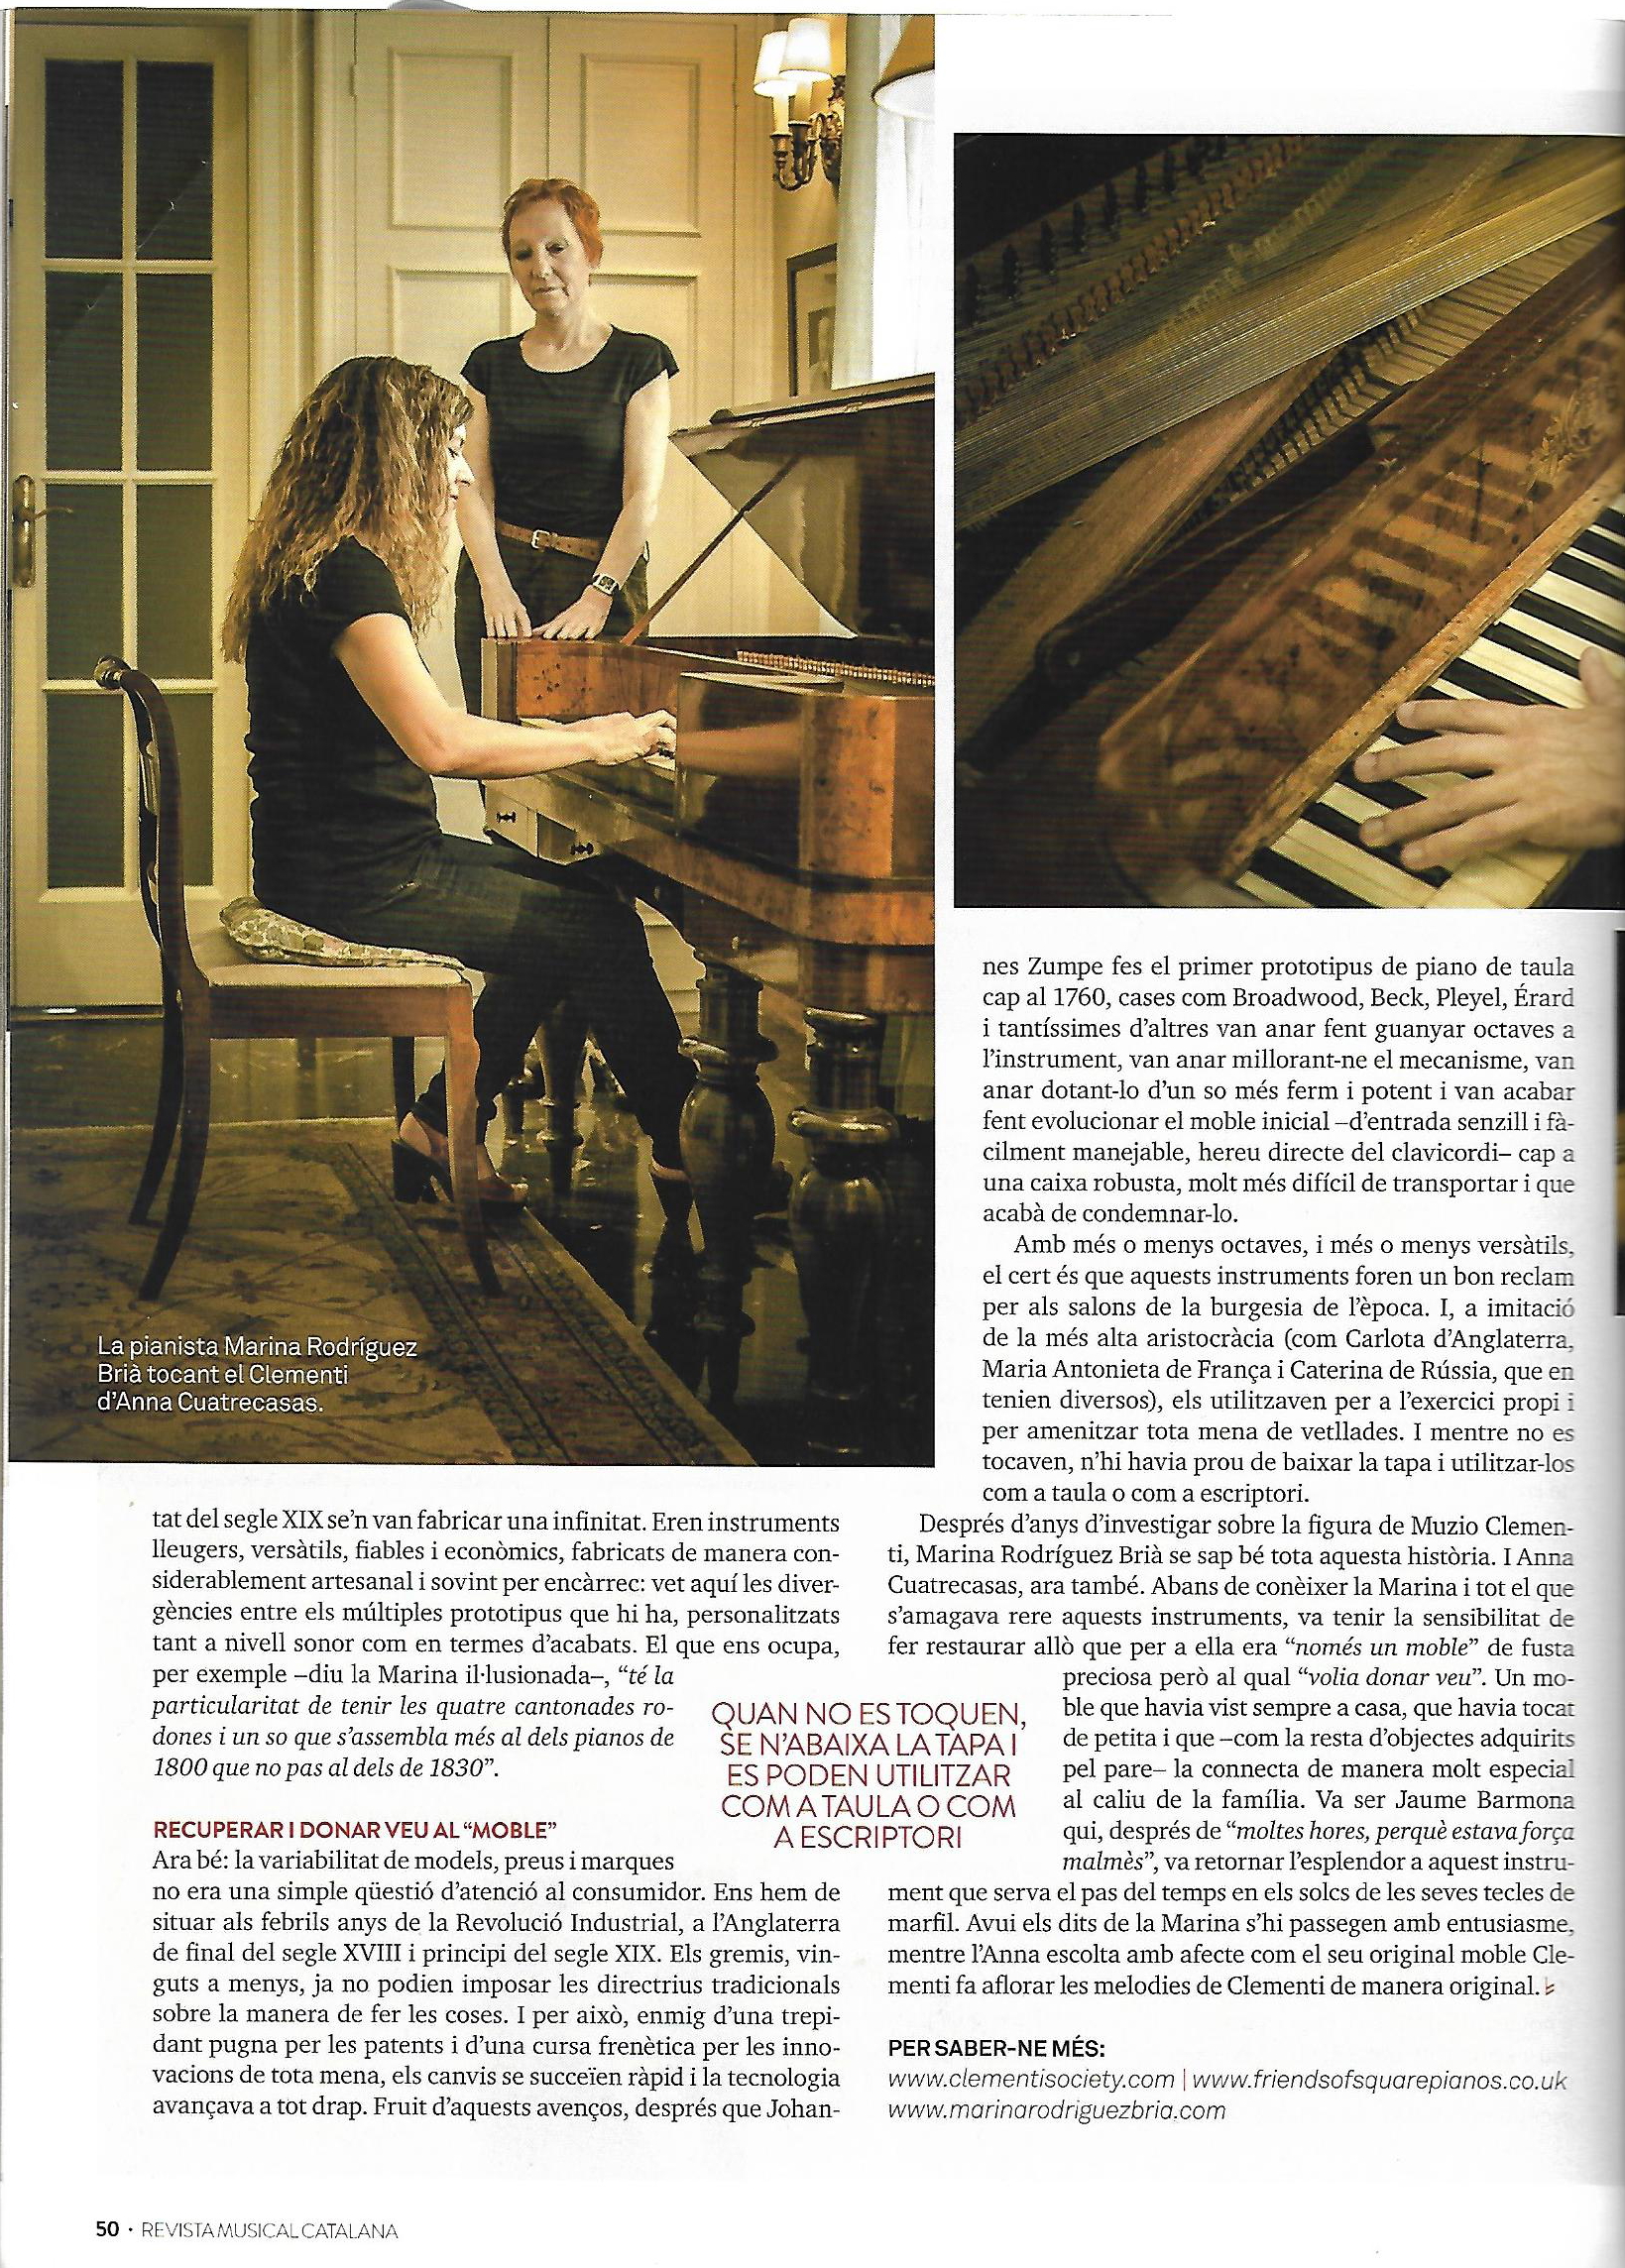 Revista Musical Catalana n348 p50